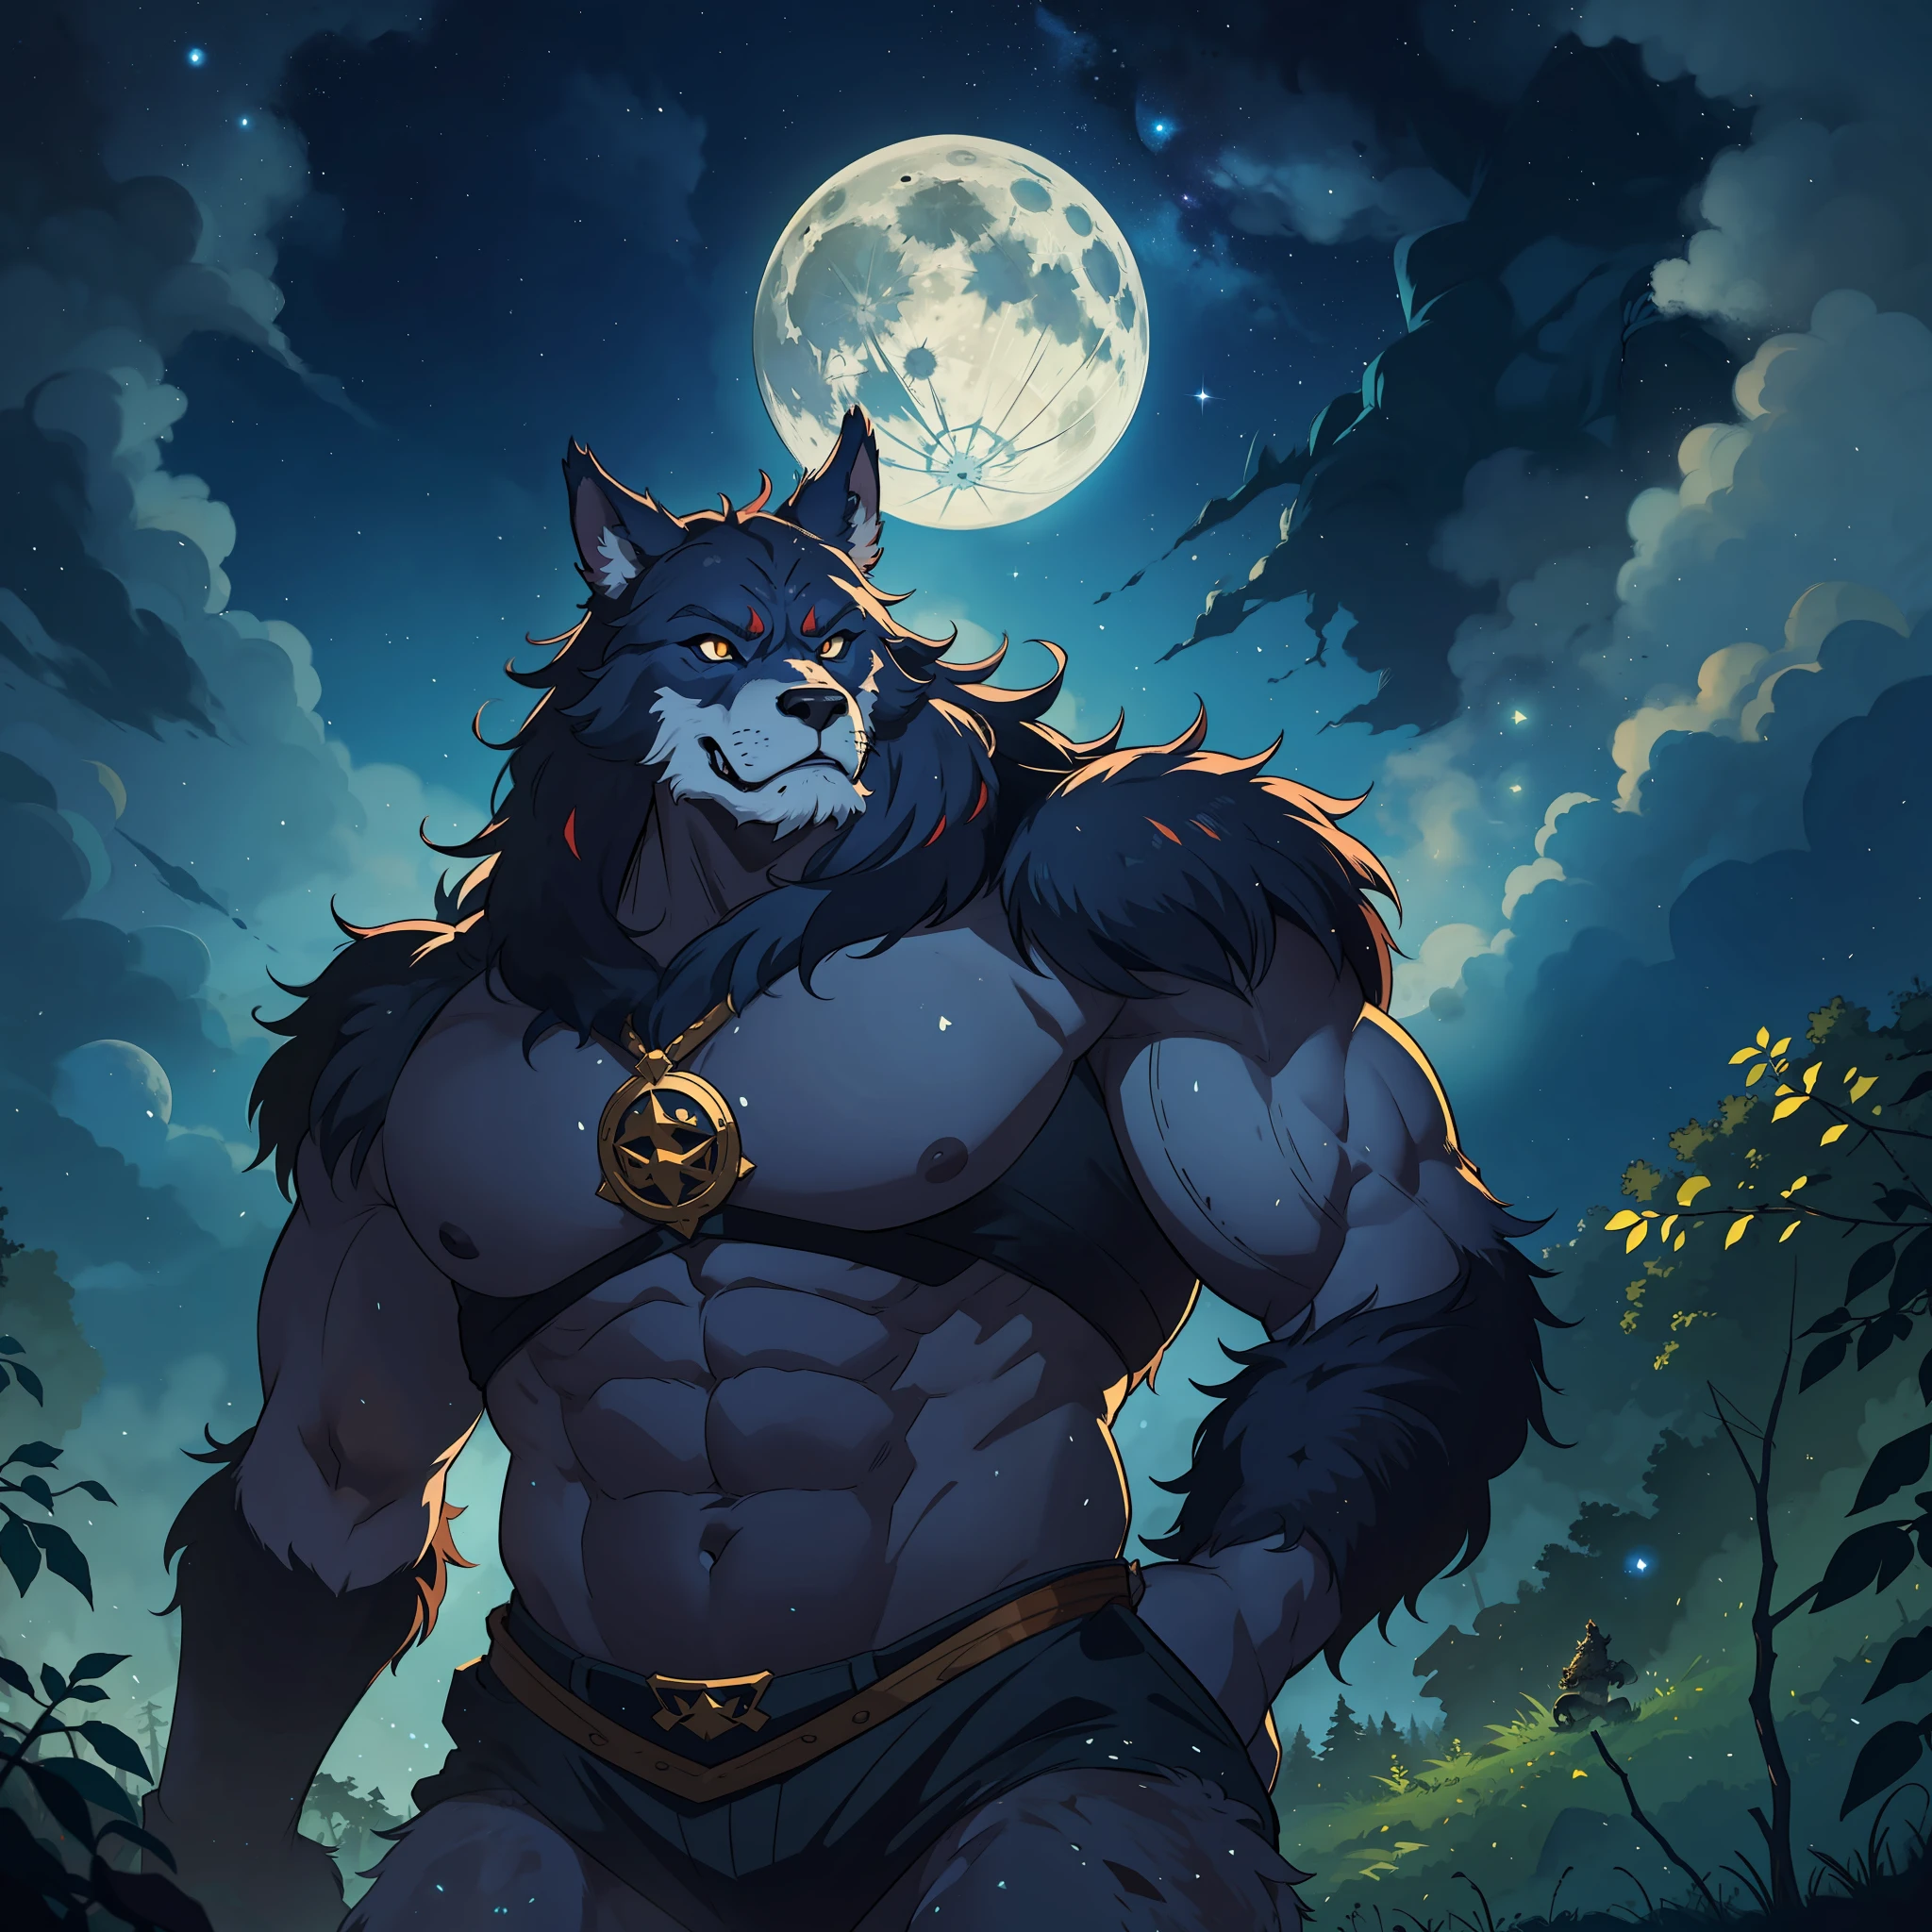 身躯宽大, 一个怪兽, 他在森林中间, 以满月和令人印象深刻的星空为背景的中世纪 RPG